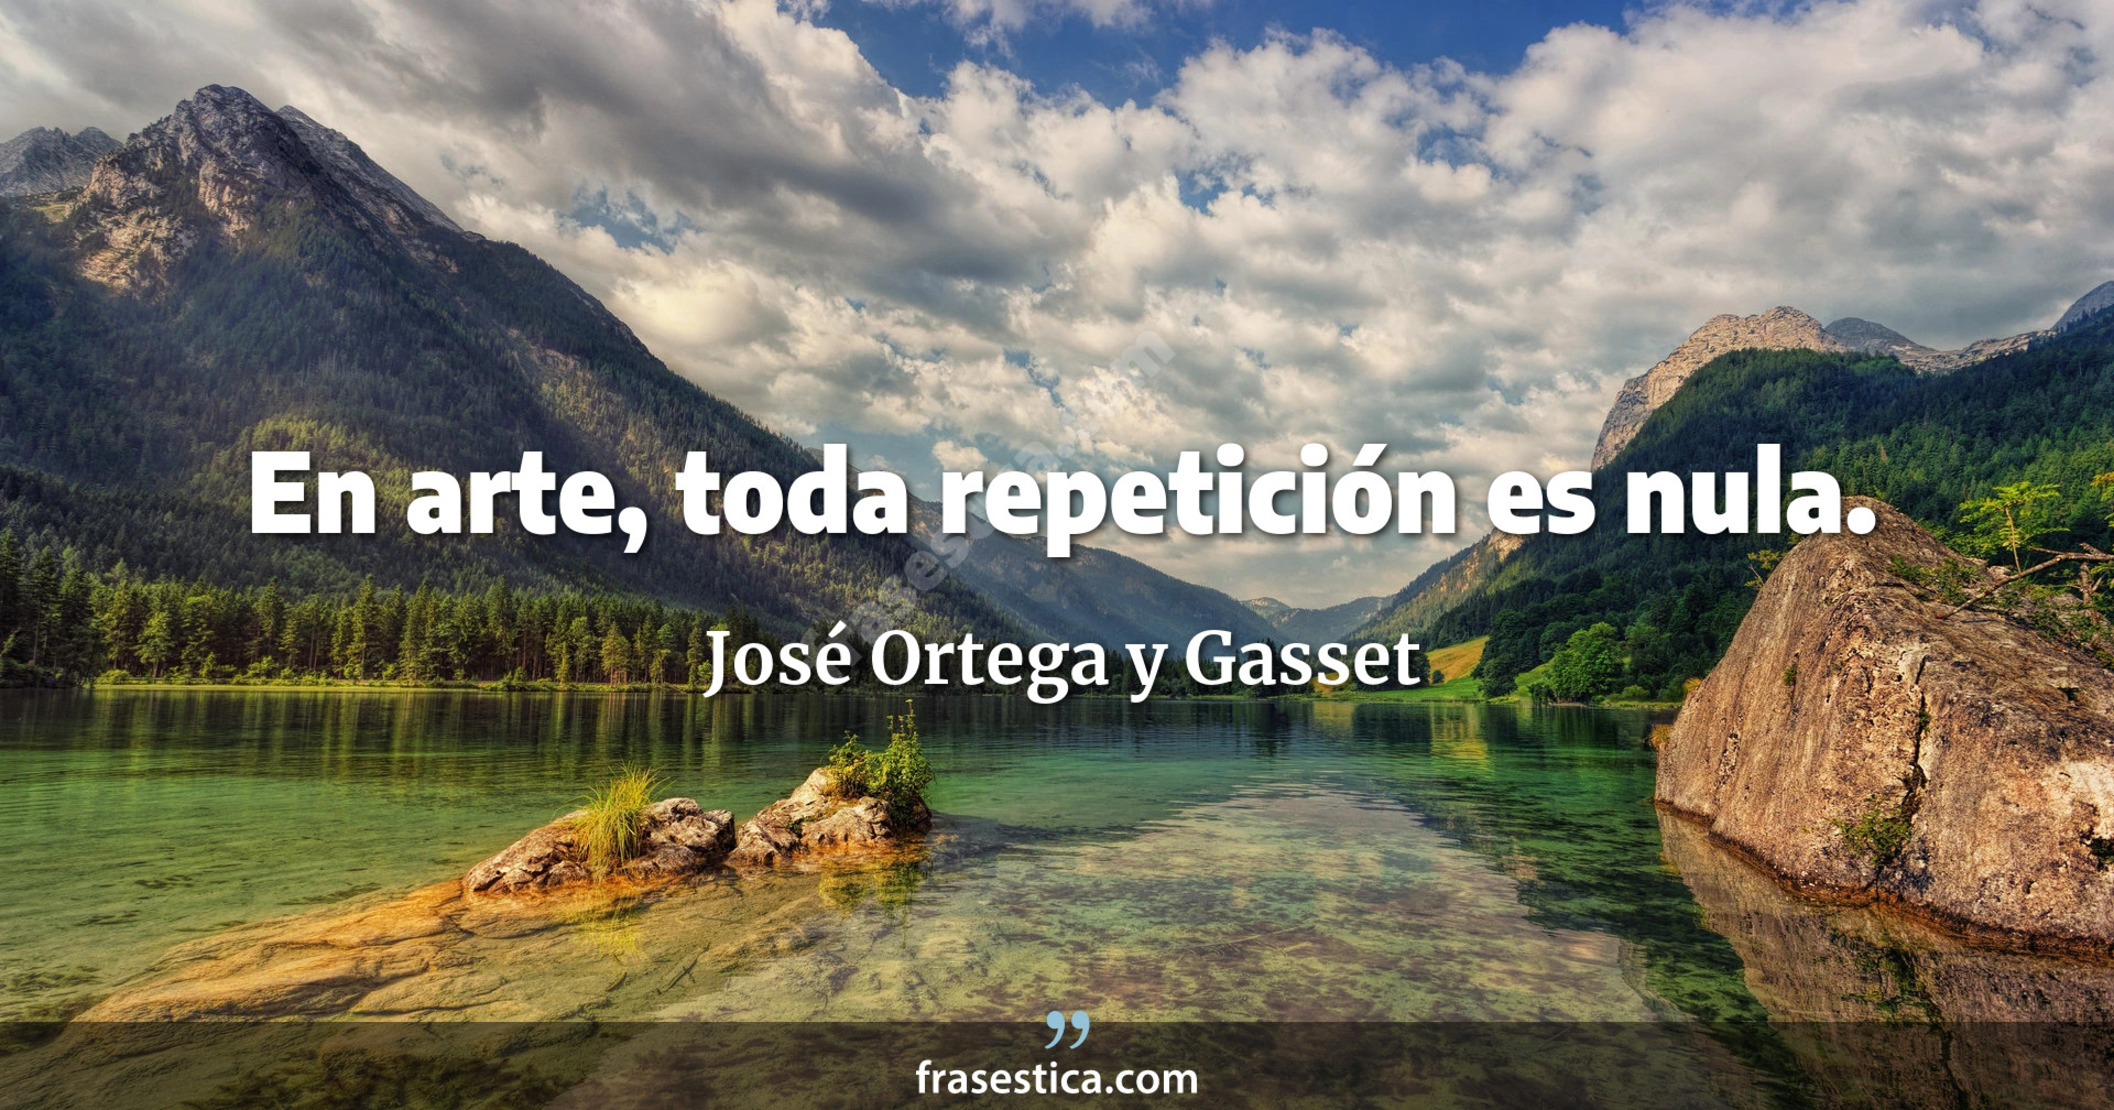 En arte, toda repetición es nula. - José Ortega y Gasset